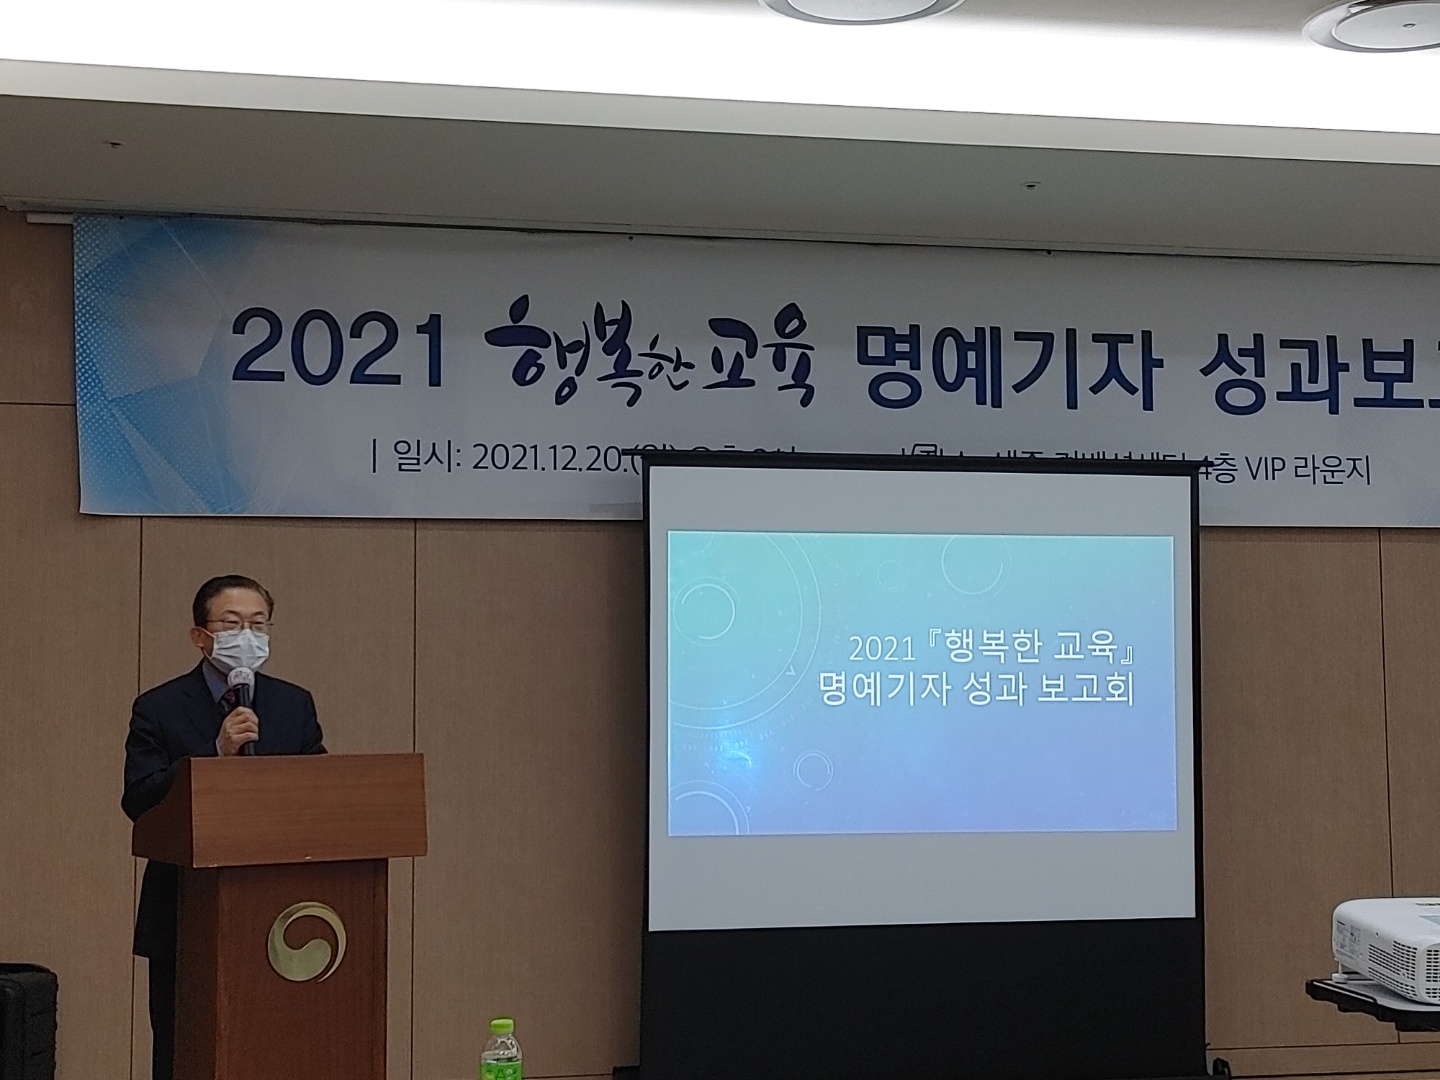 2021 <행복한 교육> 명예기자 성과보고회가 열리다!